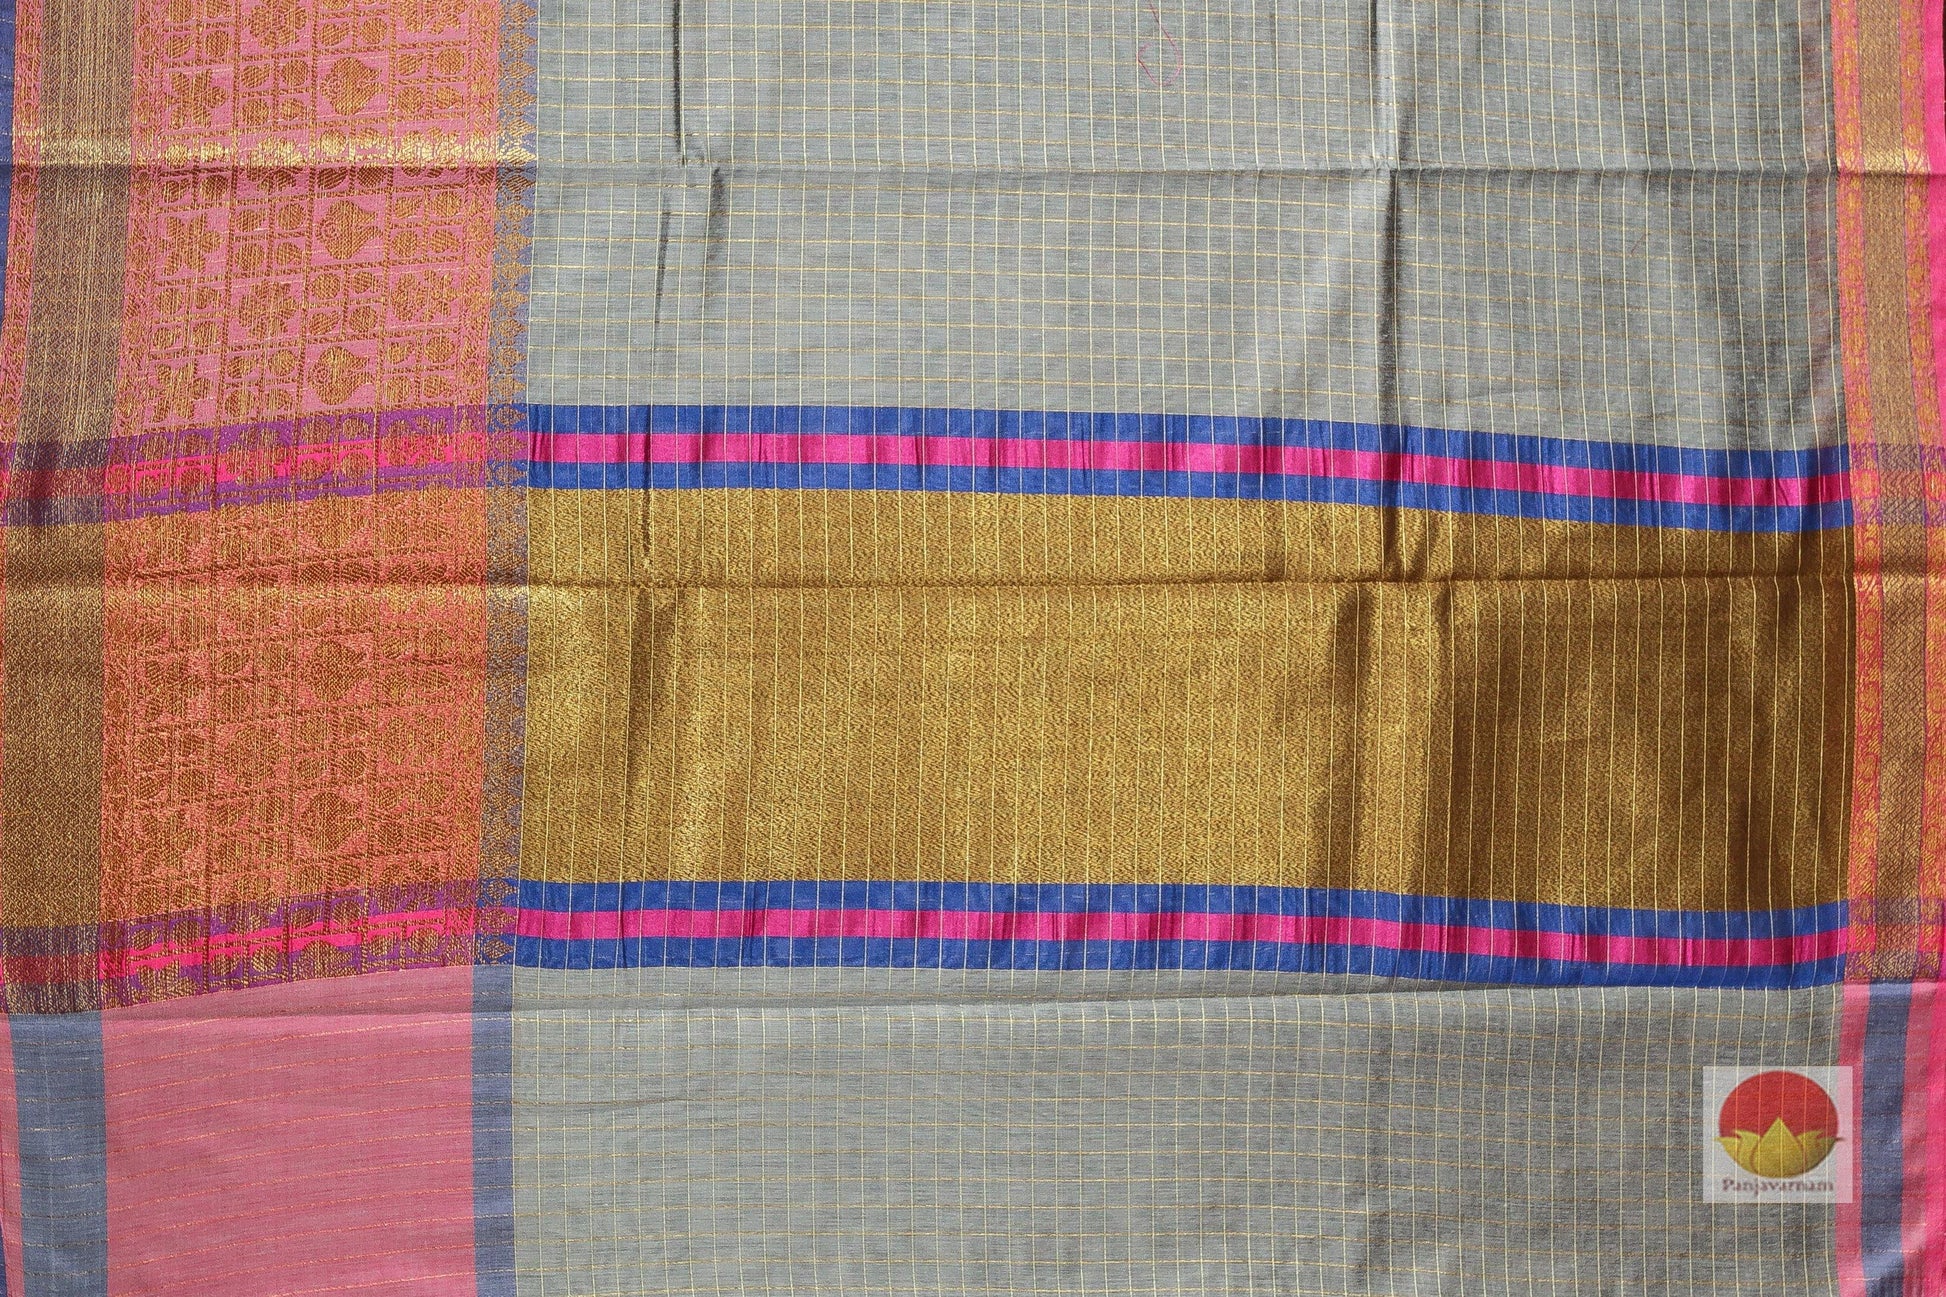 Handwoven Banarasi Silk Cotton Saree - PSC 317 - Silk Cotton - Panjavarnam